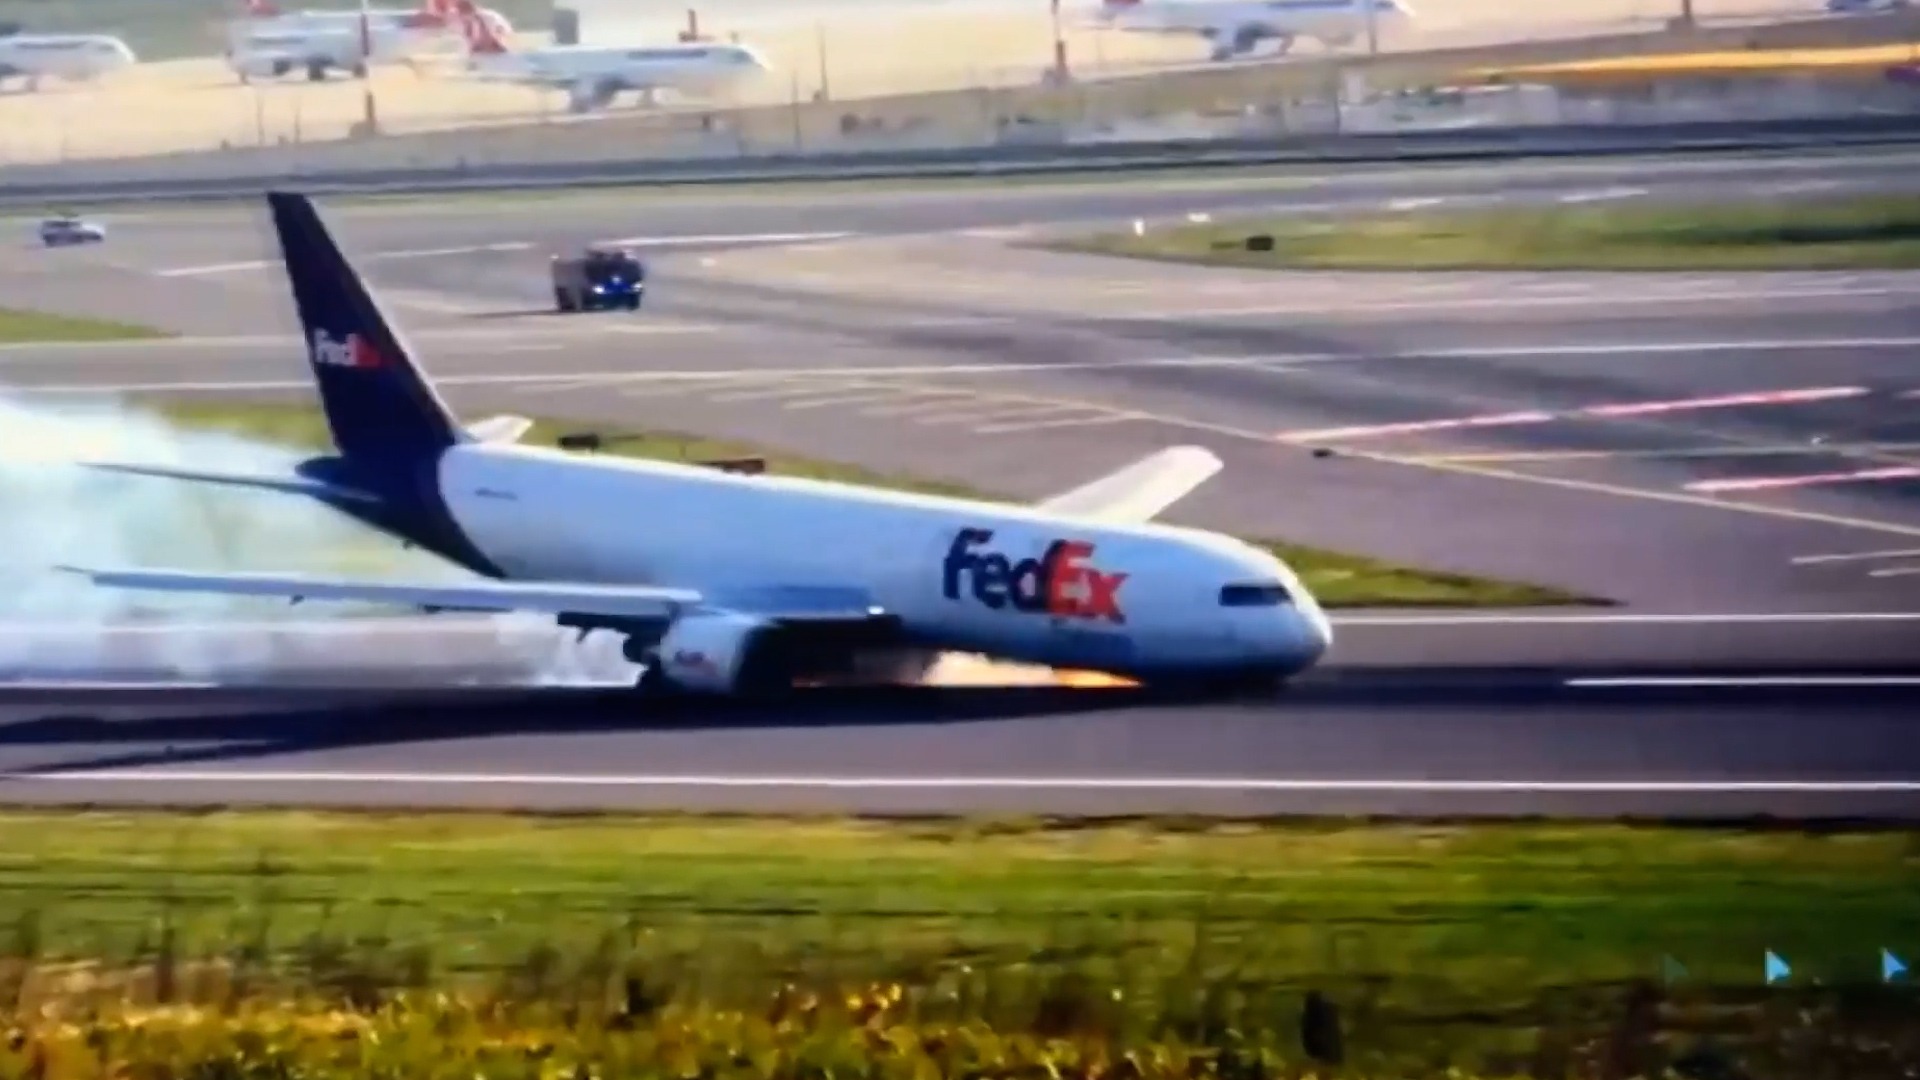 Atterrissage d’urgence d’un Boeing 767 suite à une défaillance du train d’atterrissage. Vidéo d’Istanbul ➤ Buzzday.info